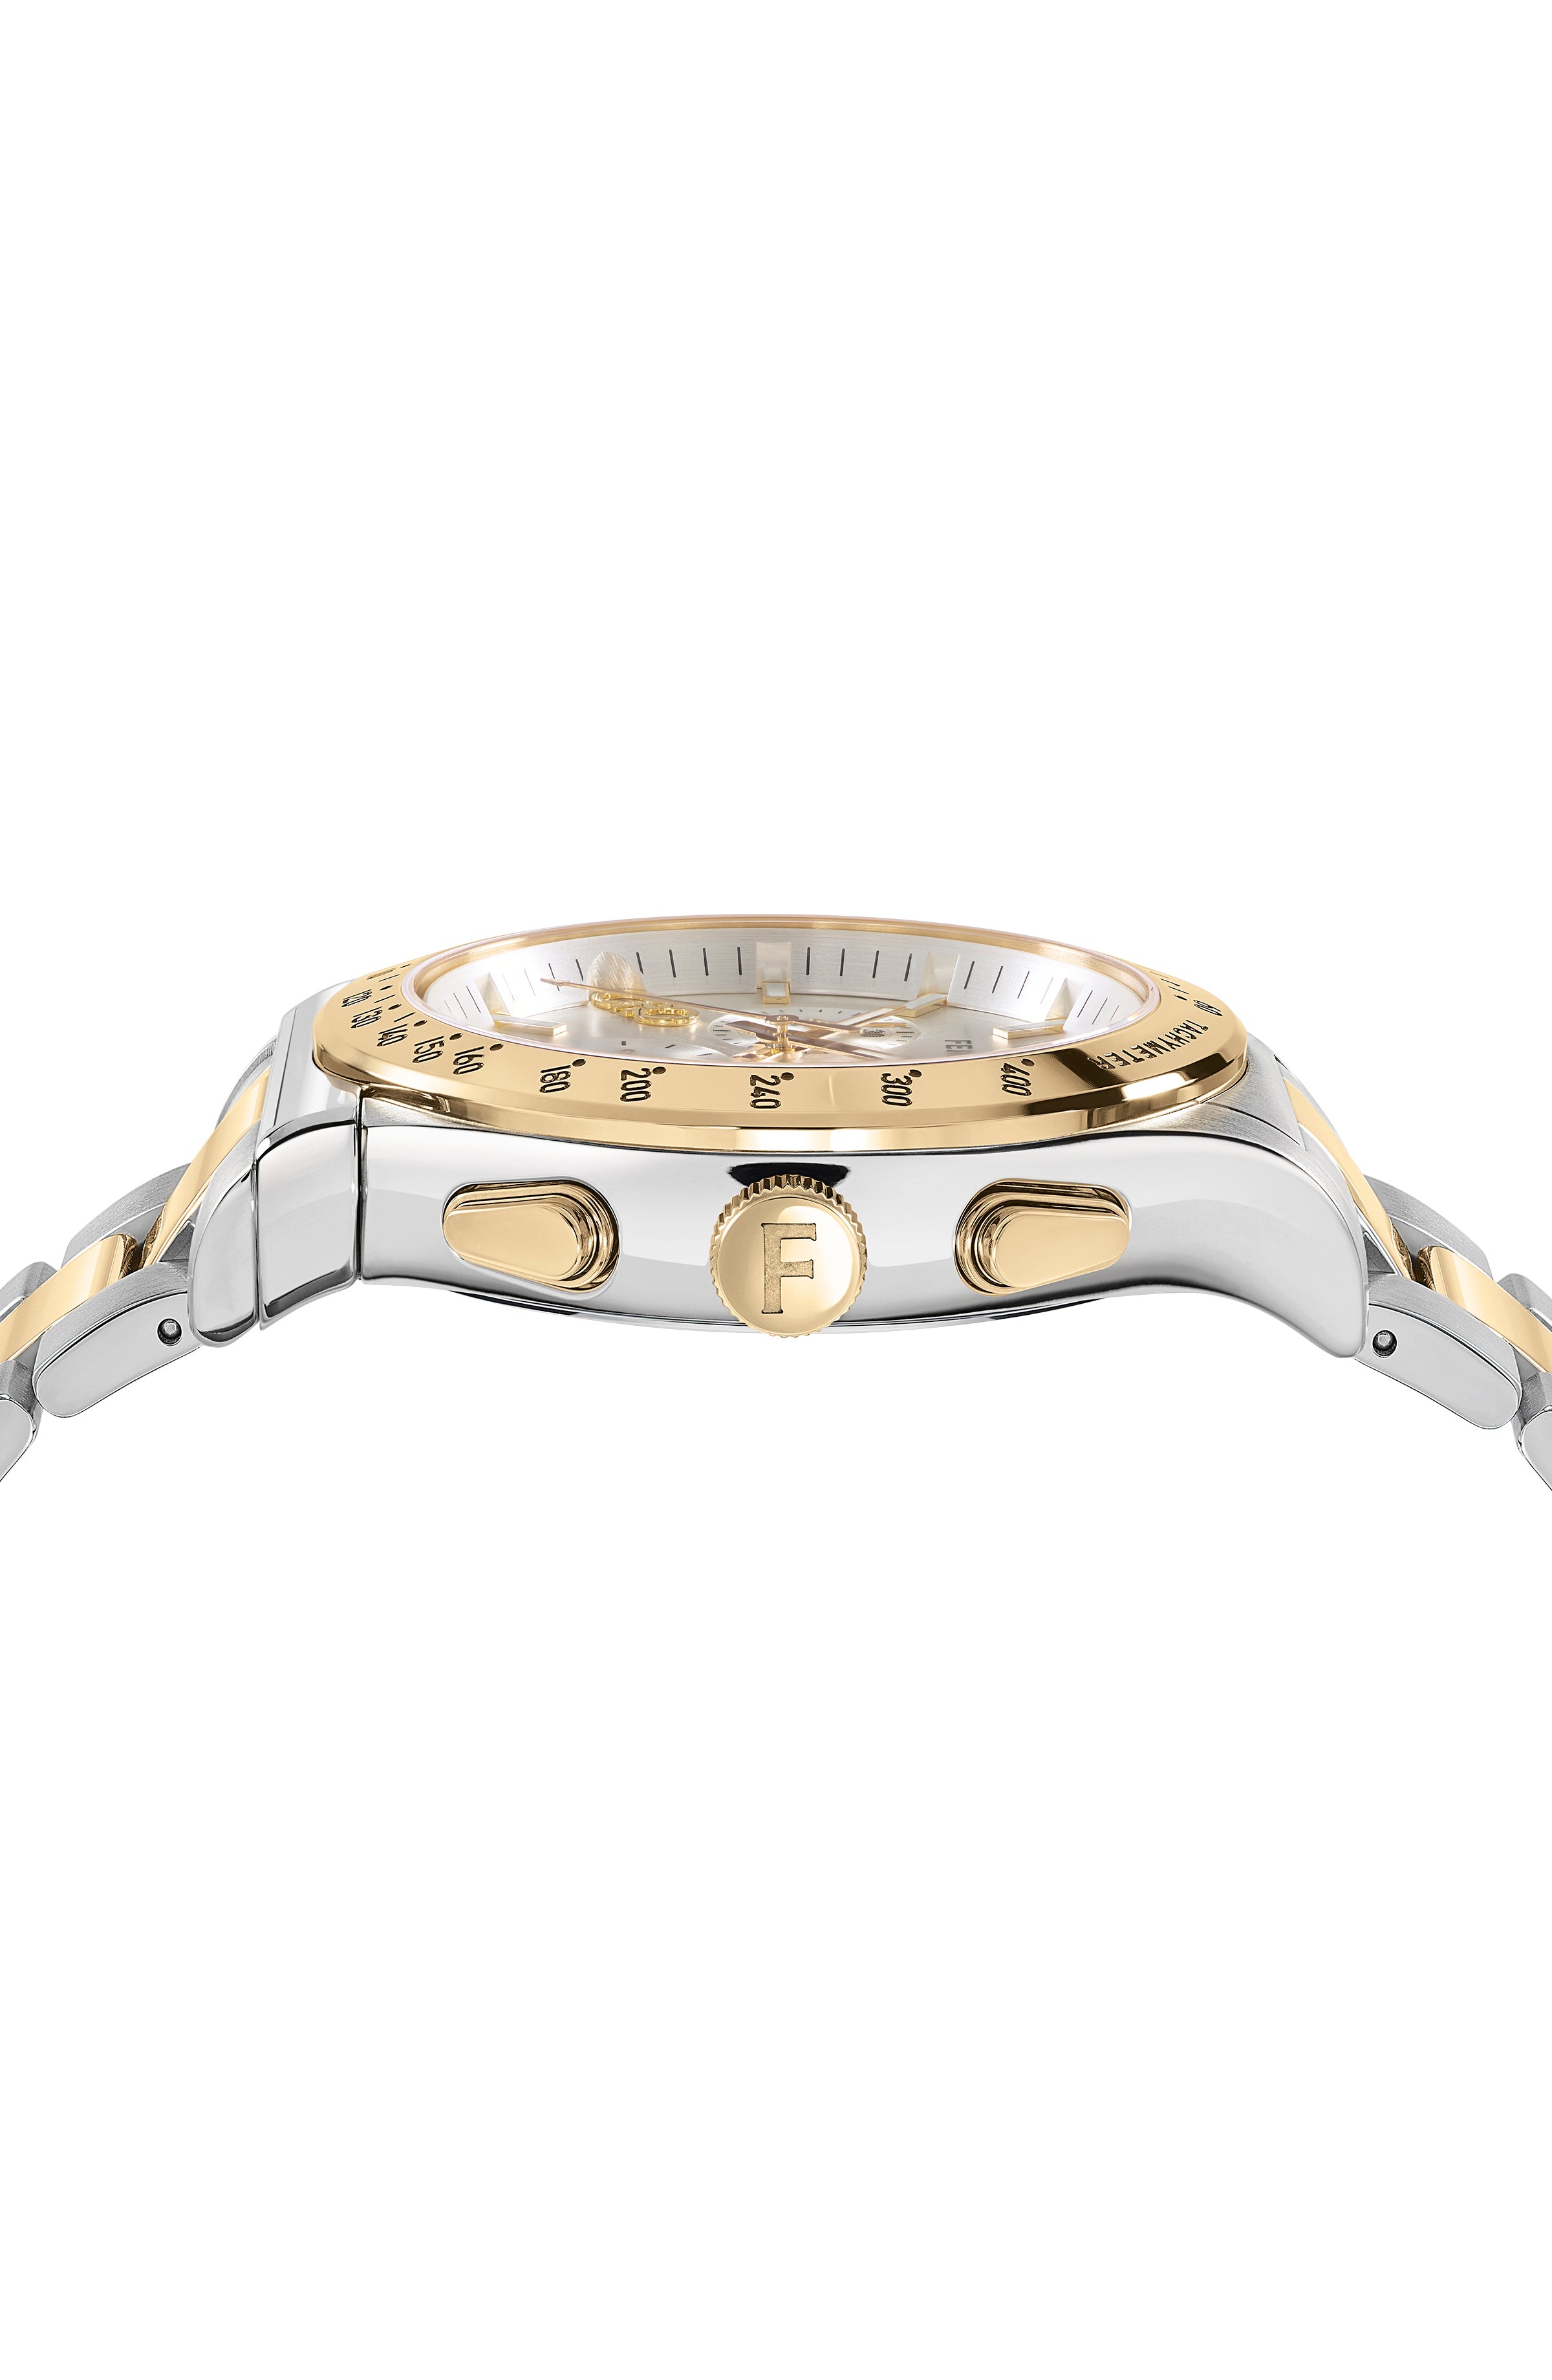 Ferragamo 1927 Chrono Bracelet Watch